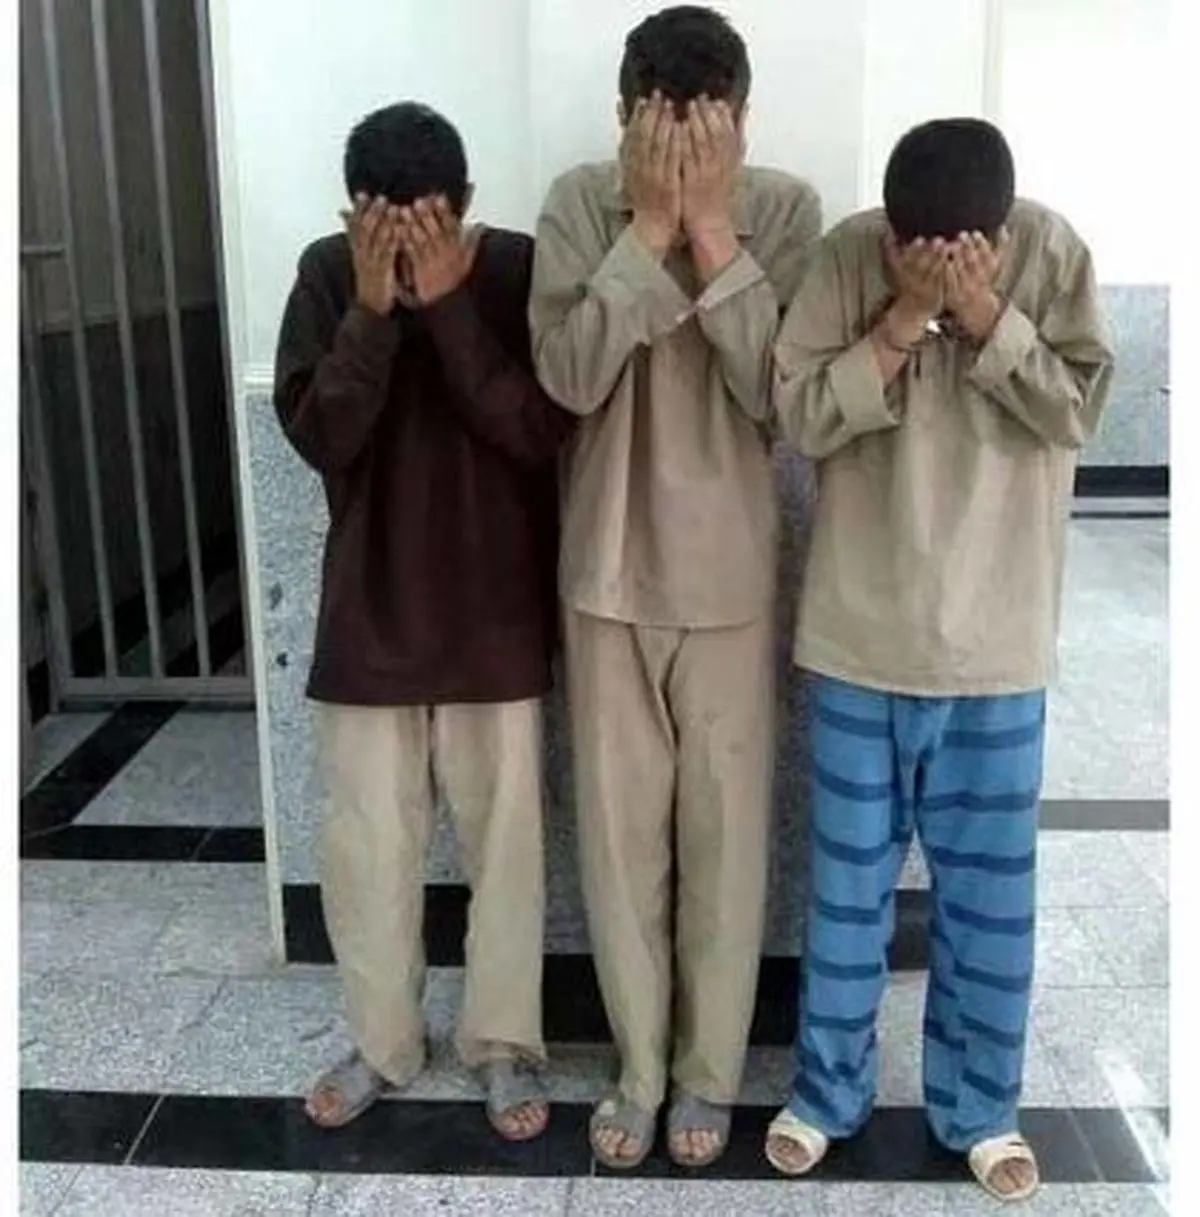 آزادی سه زندانی مخوف/ کابوس تهرانی ها در لحظات خاص+ عکس 